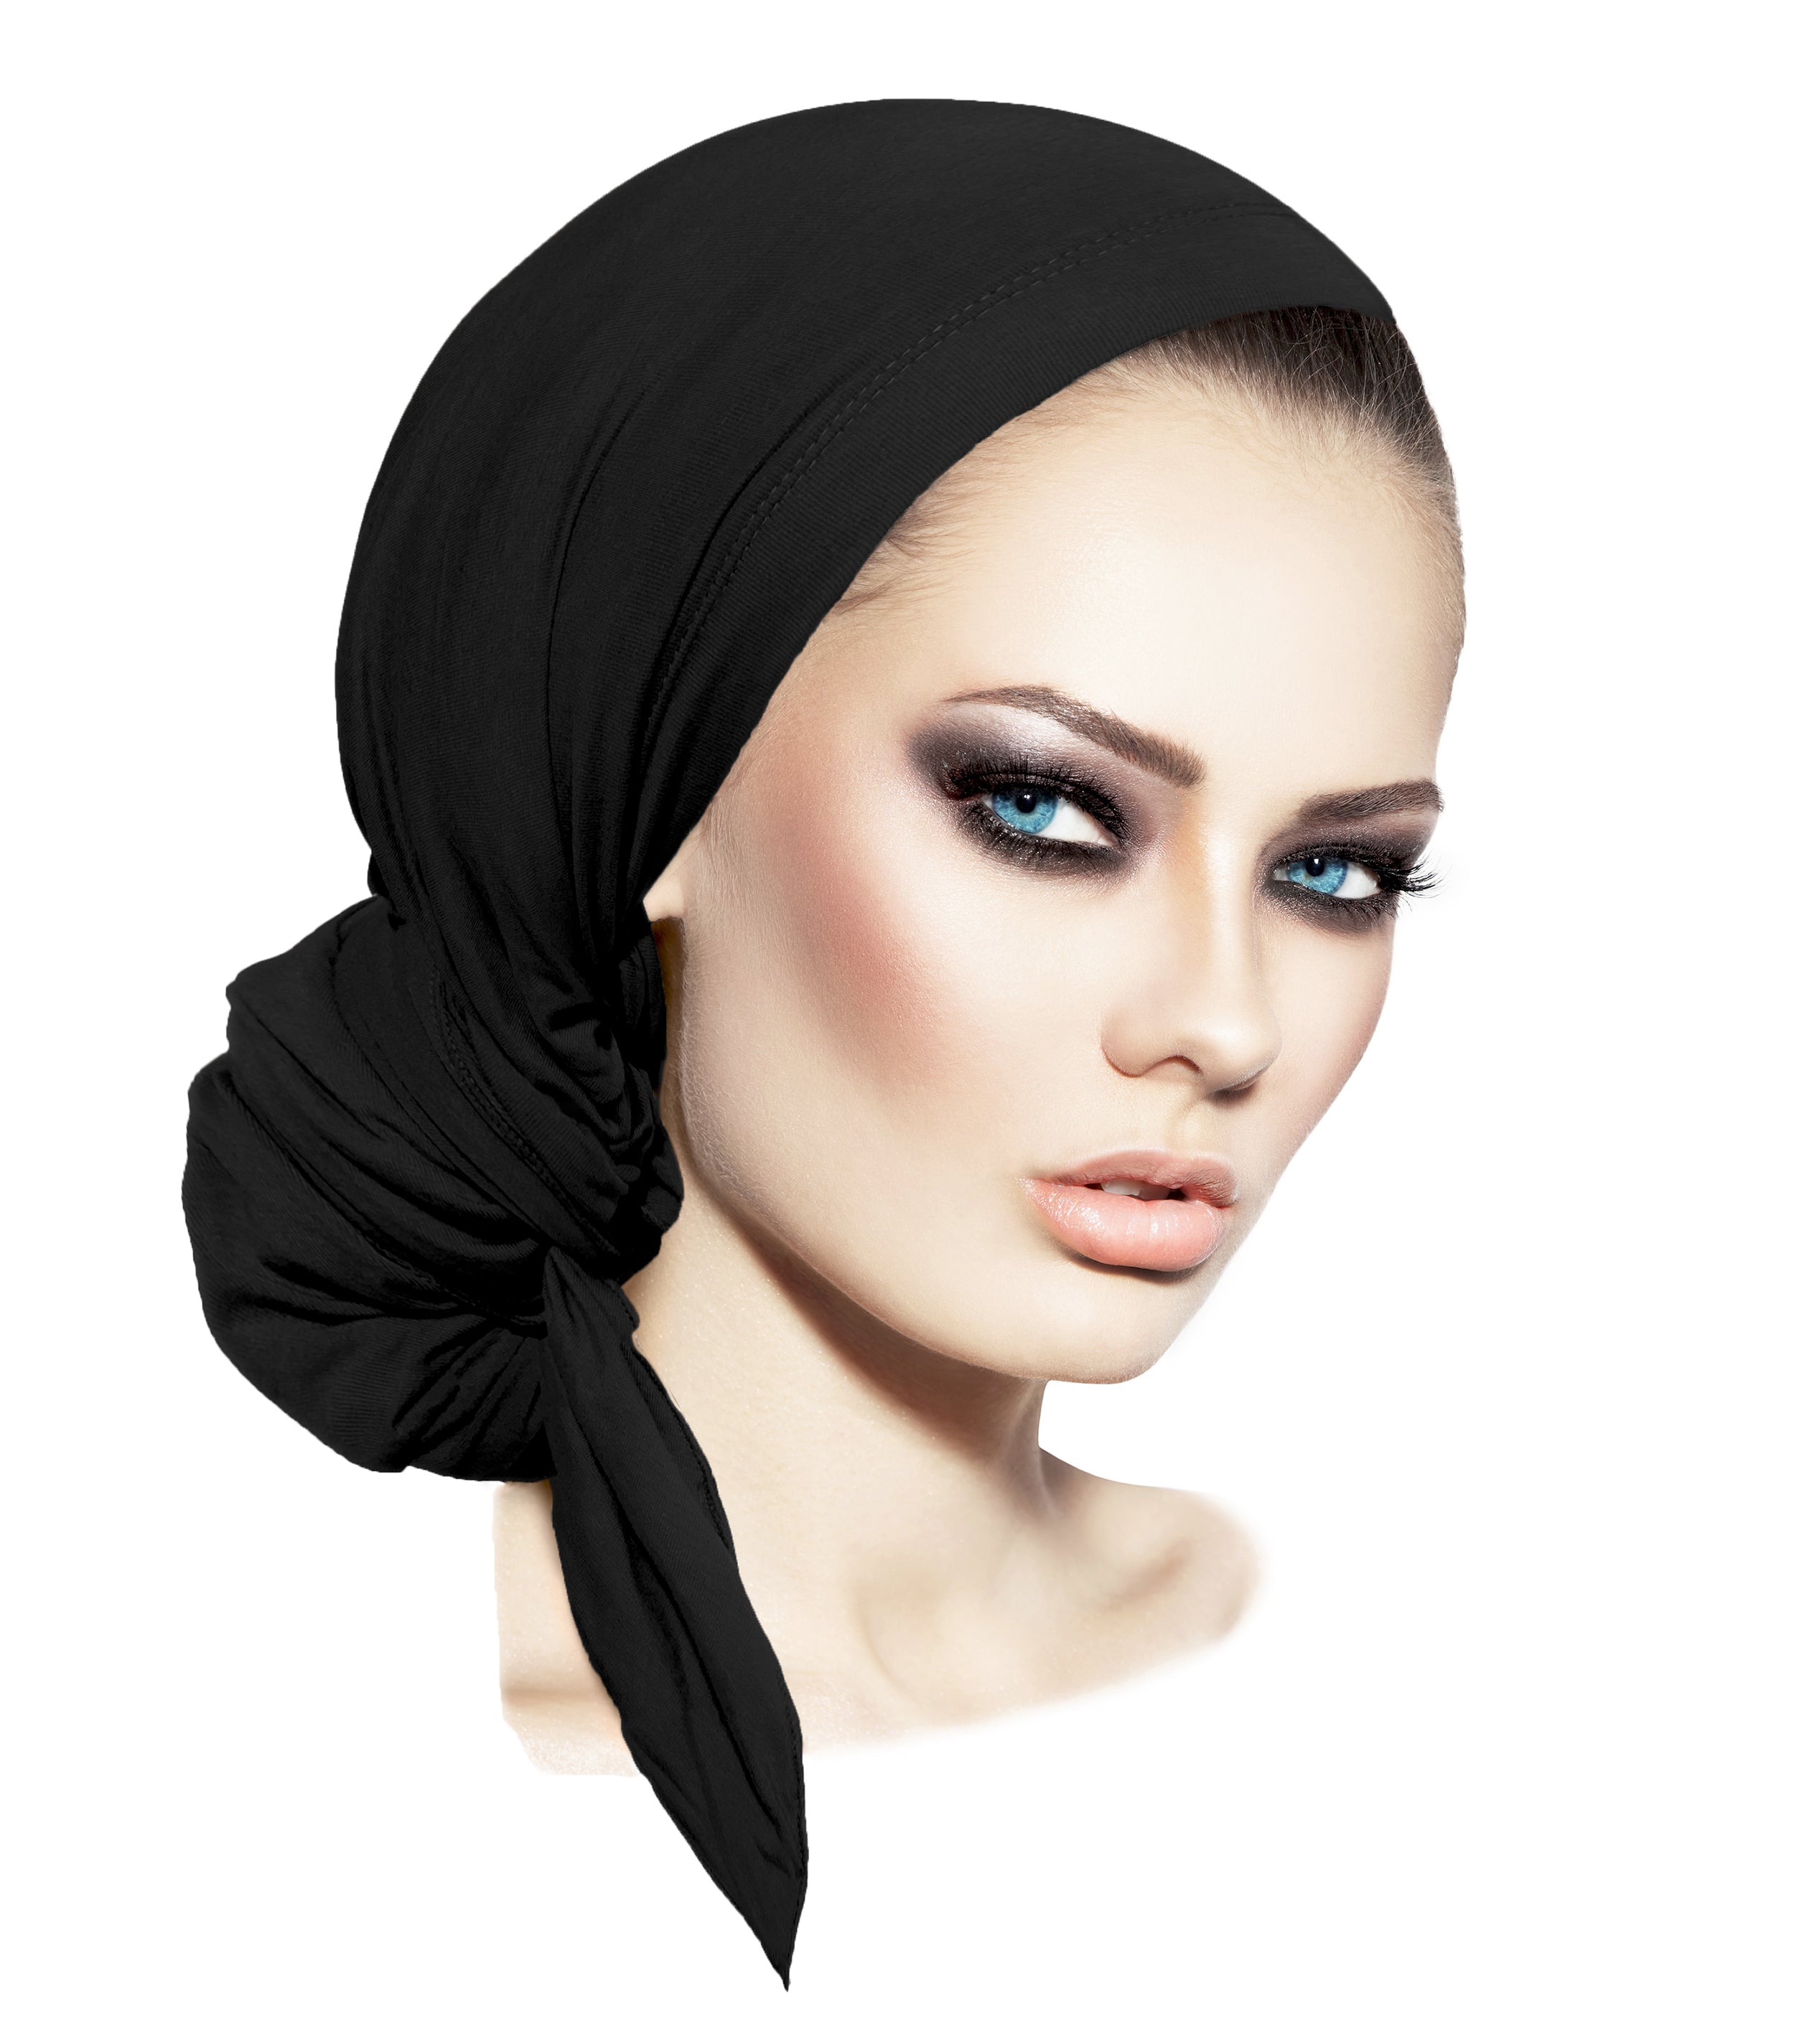 Plain cotton headscarves